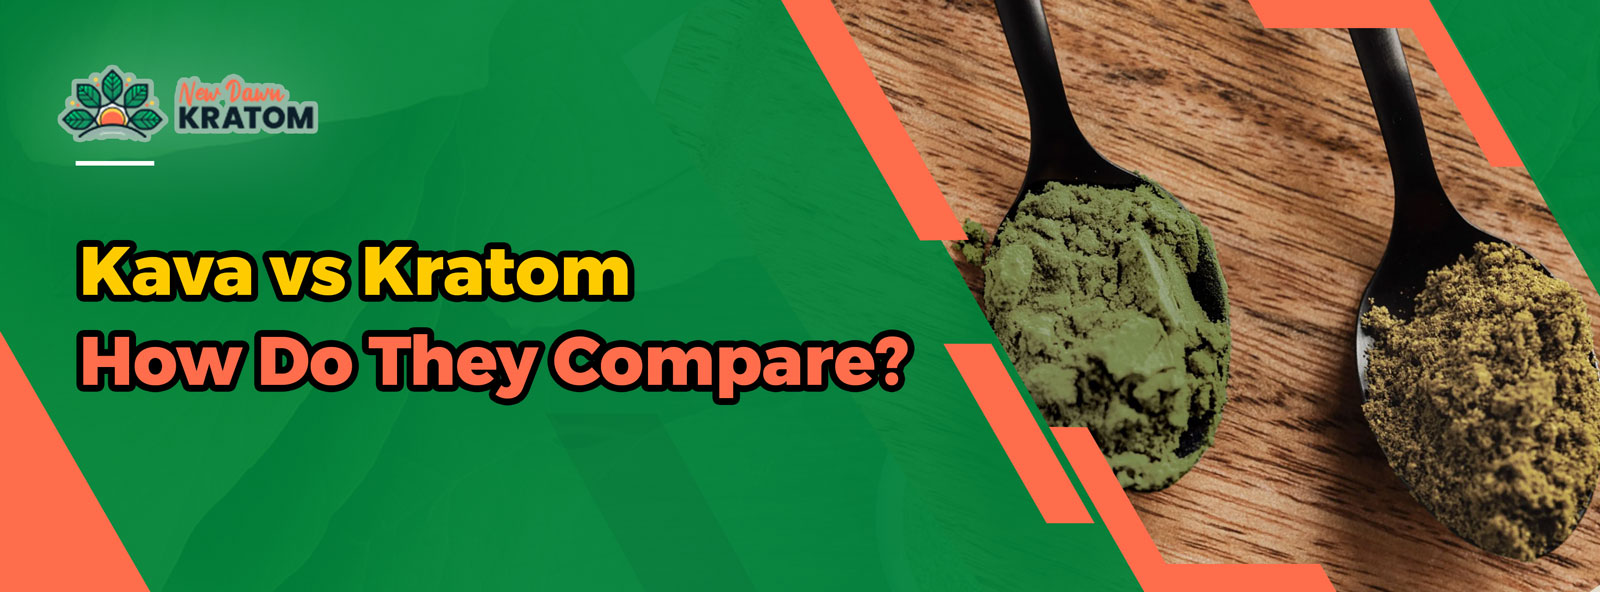 kava vs kratom – how do they compare?